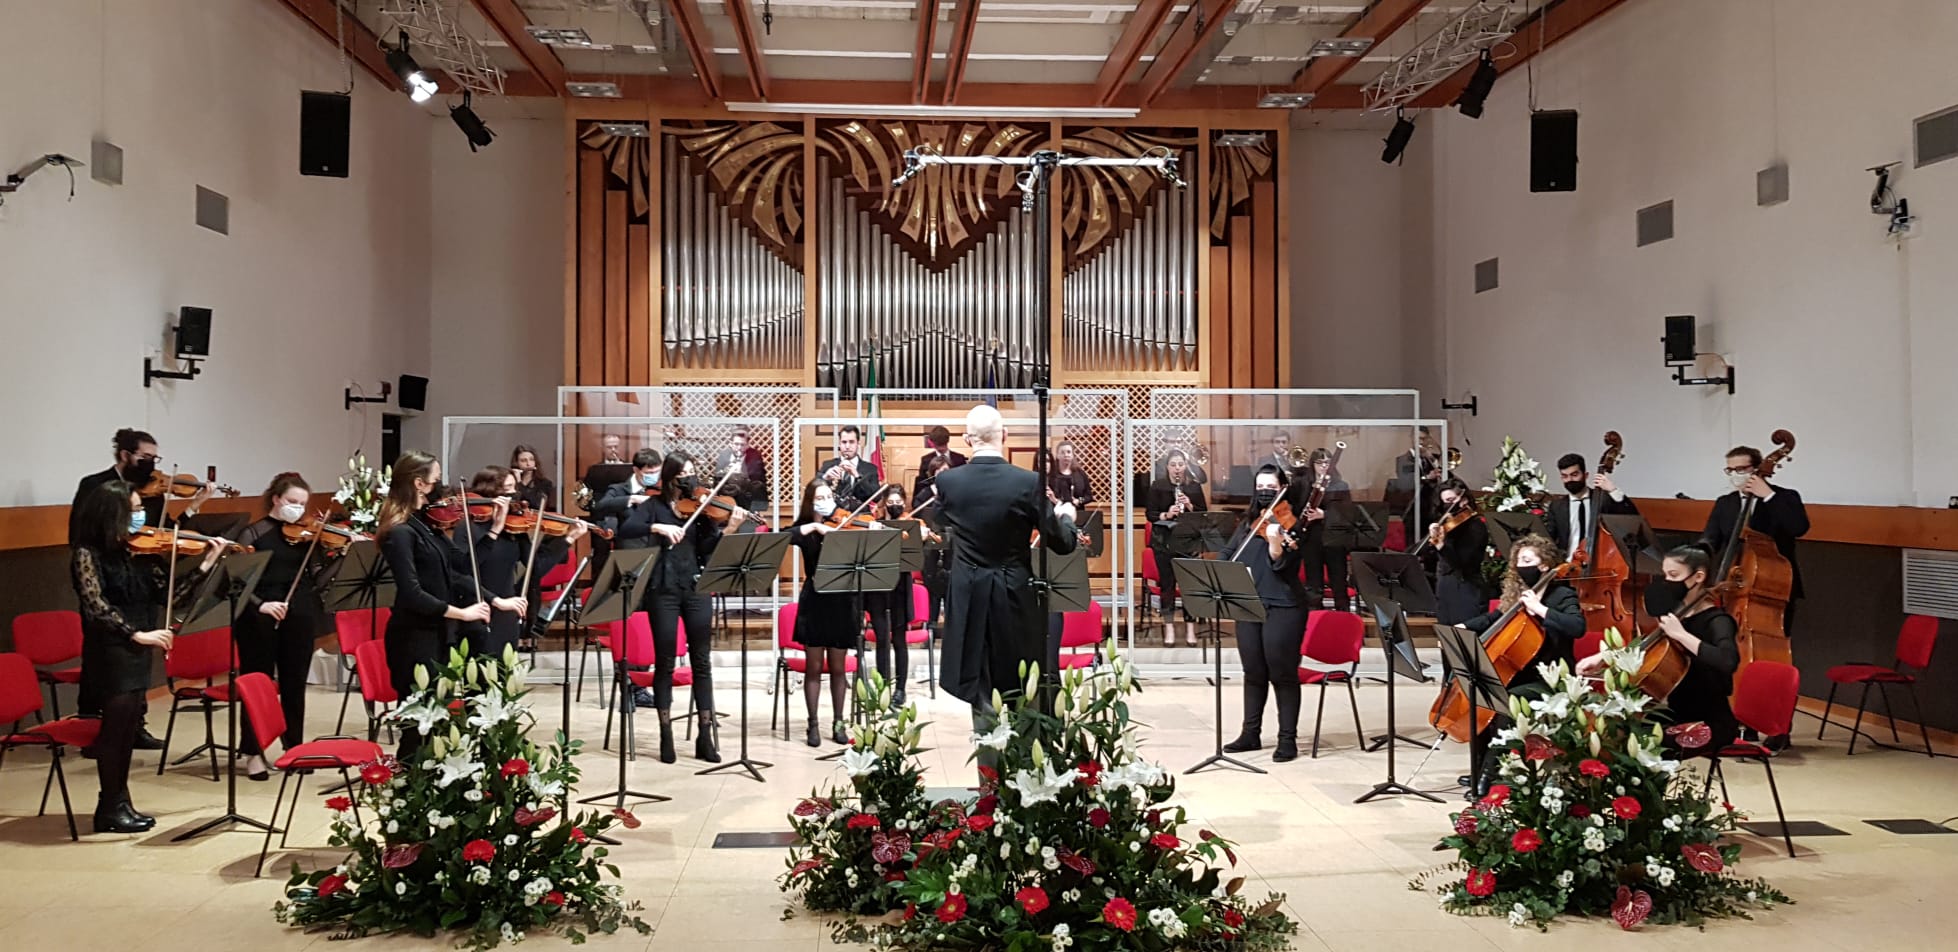 Al momento stai visualizzando Giorno del Ricordo: Conservatorio Tartini, l’emozione di siglare la colonna sonora davanti al Presidente Mattarella